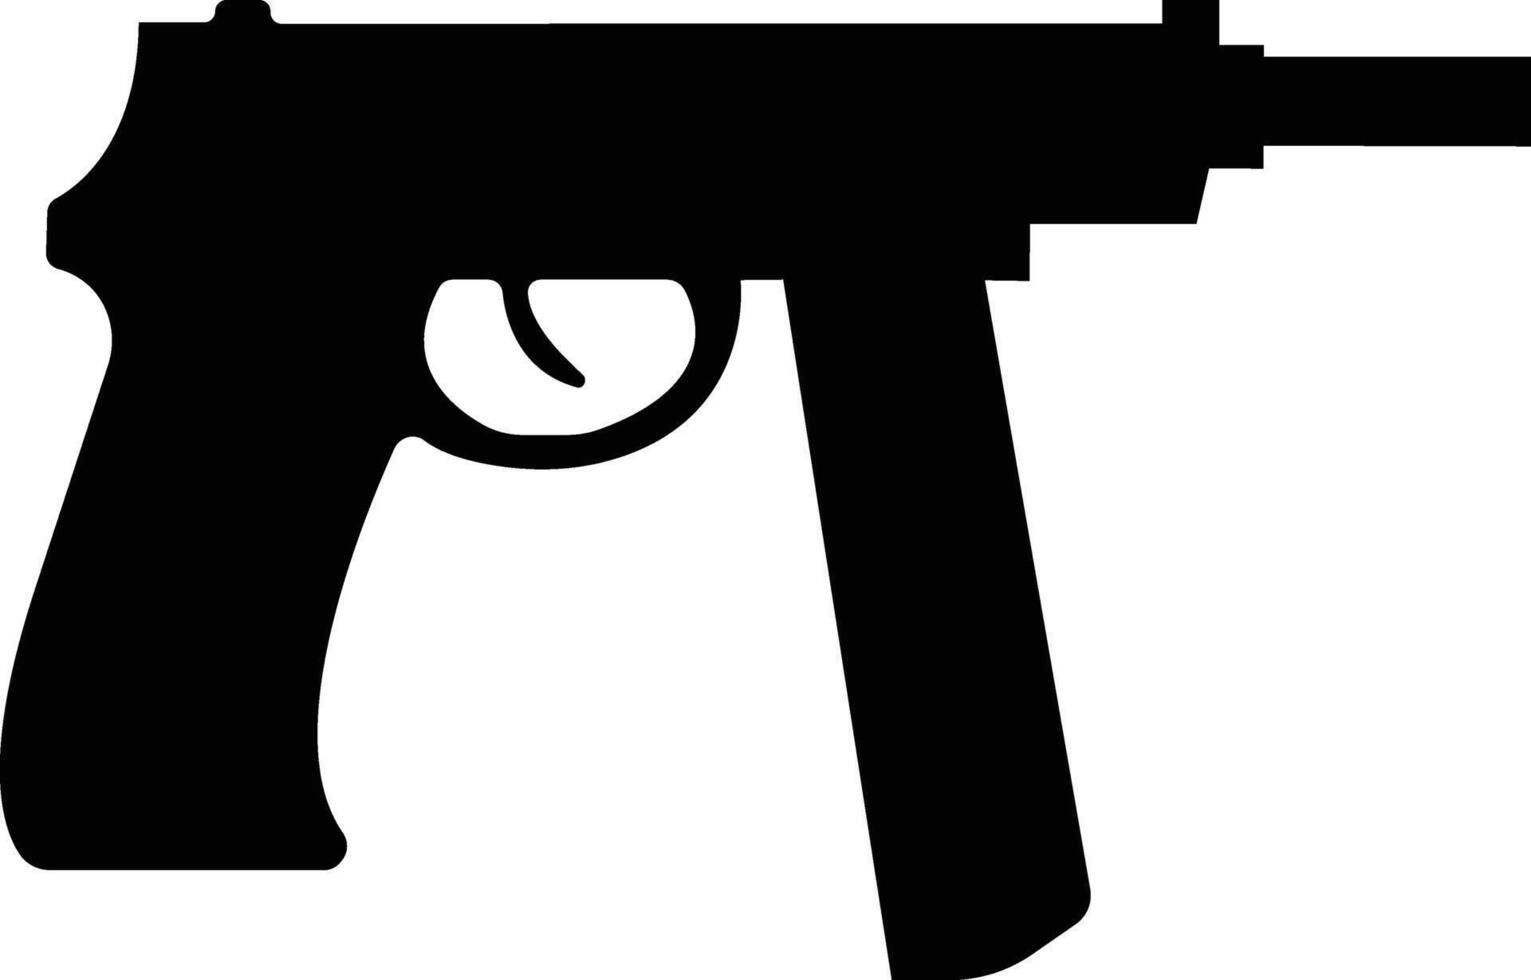 pistol ikon i platt från armén och krig isolerat på symbol vektor för appar och hemsida. pistol, gevär, revolver för vild väst begrepp, polis officer ammunition eller militär vapen.